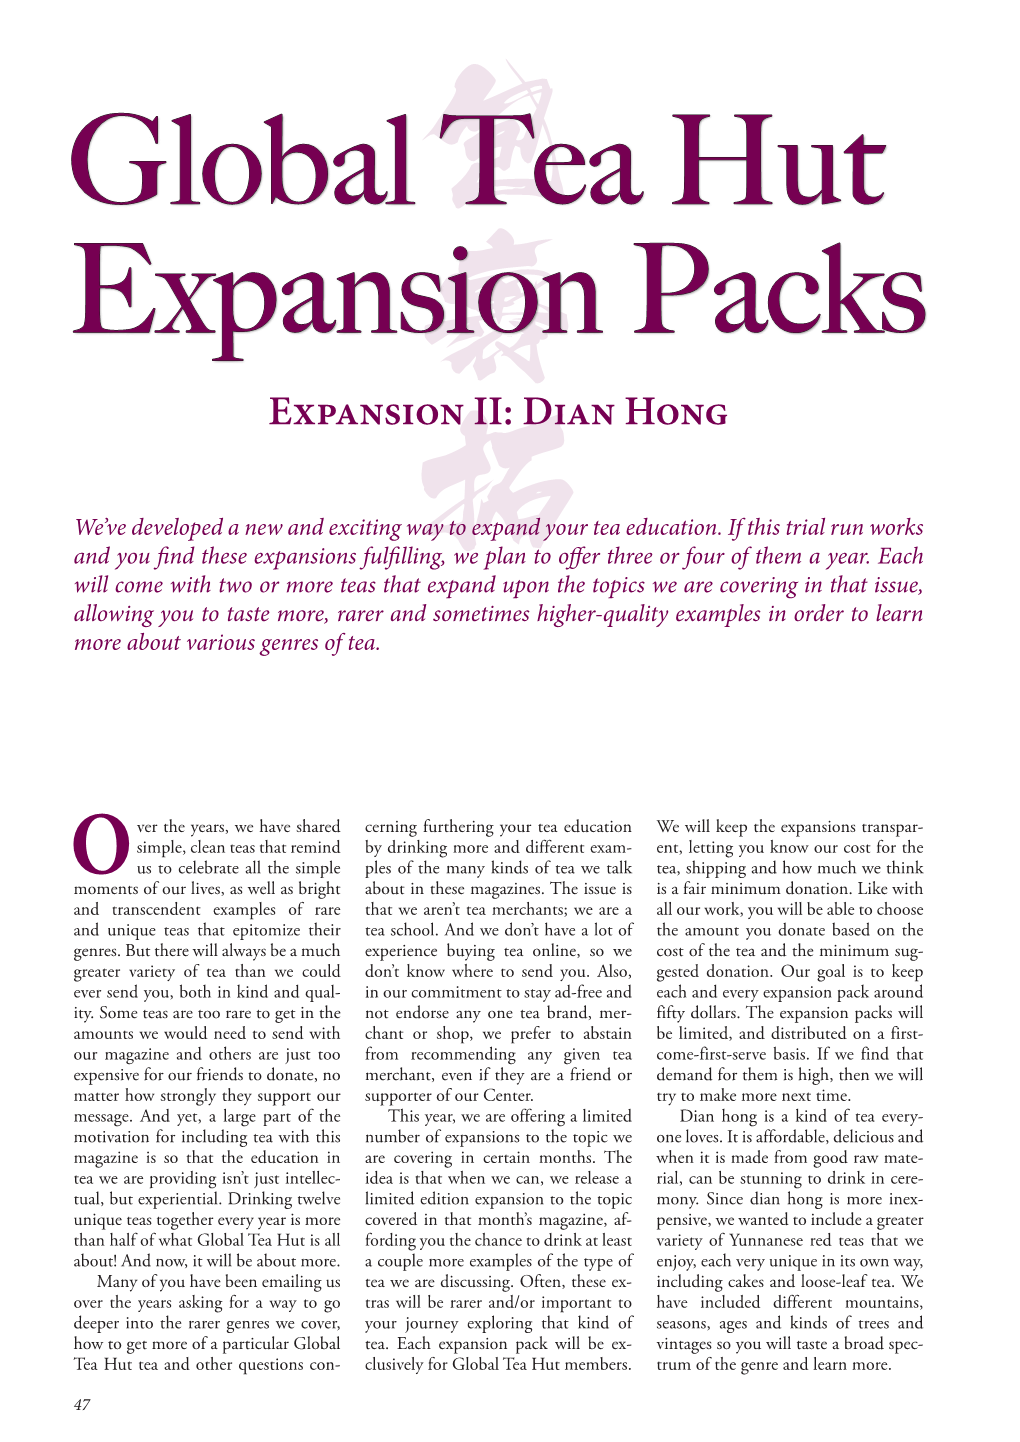 Expansion II: Dian Hong